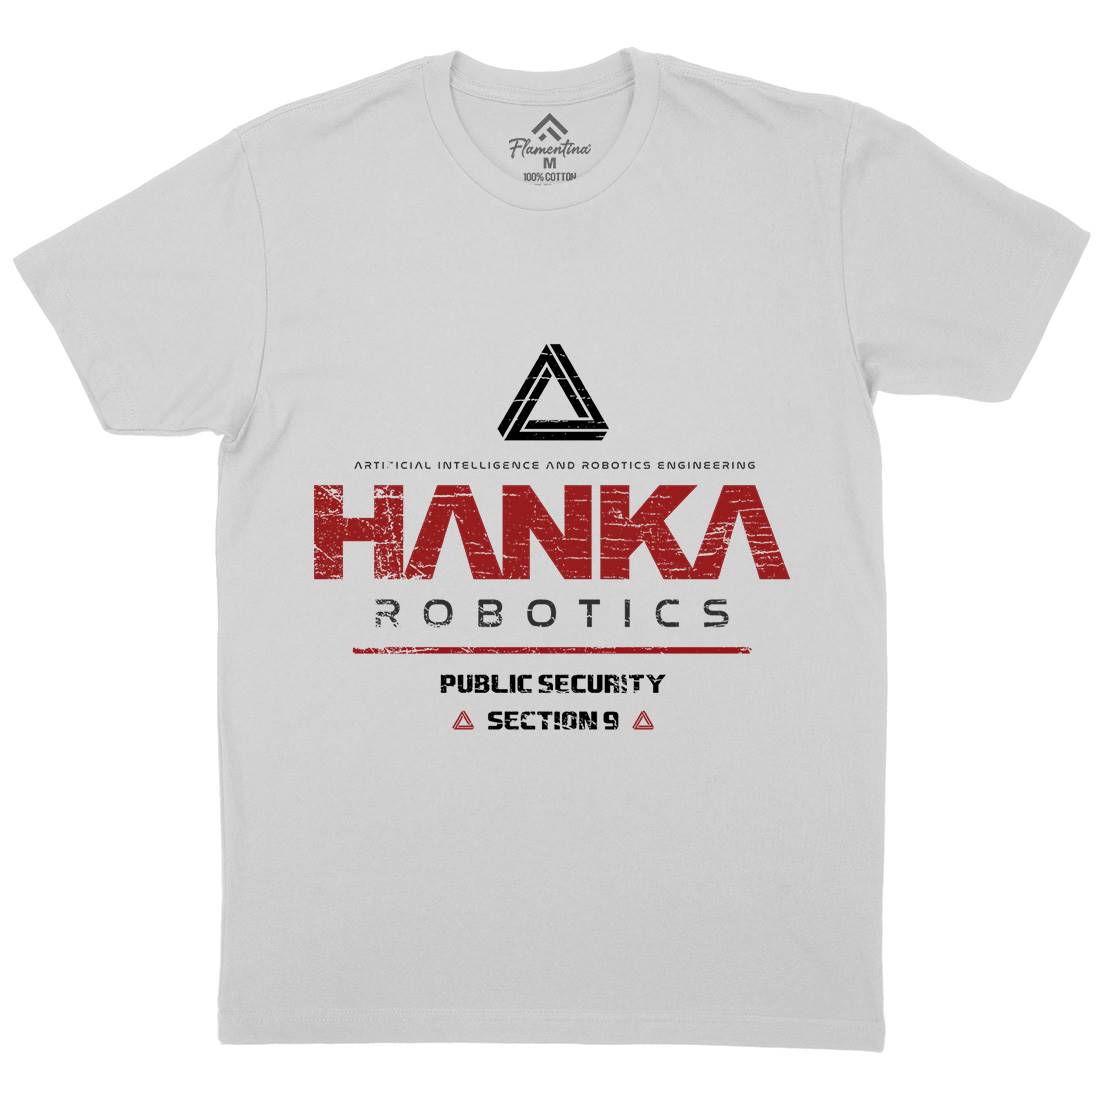 Hanka Robotics Mens Crew Neck T-Shirt Space D194